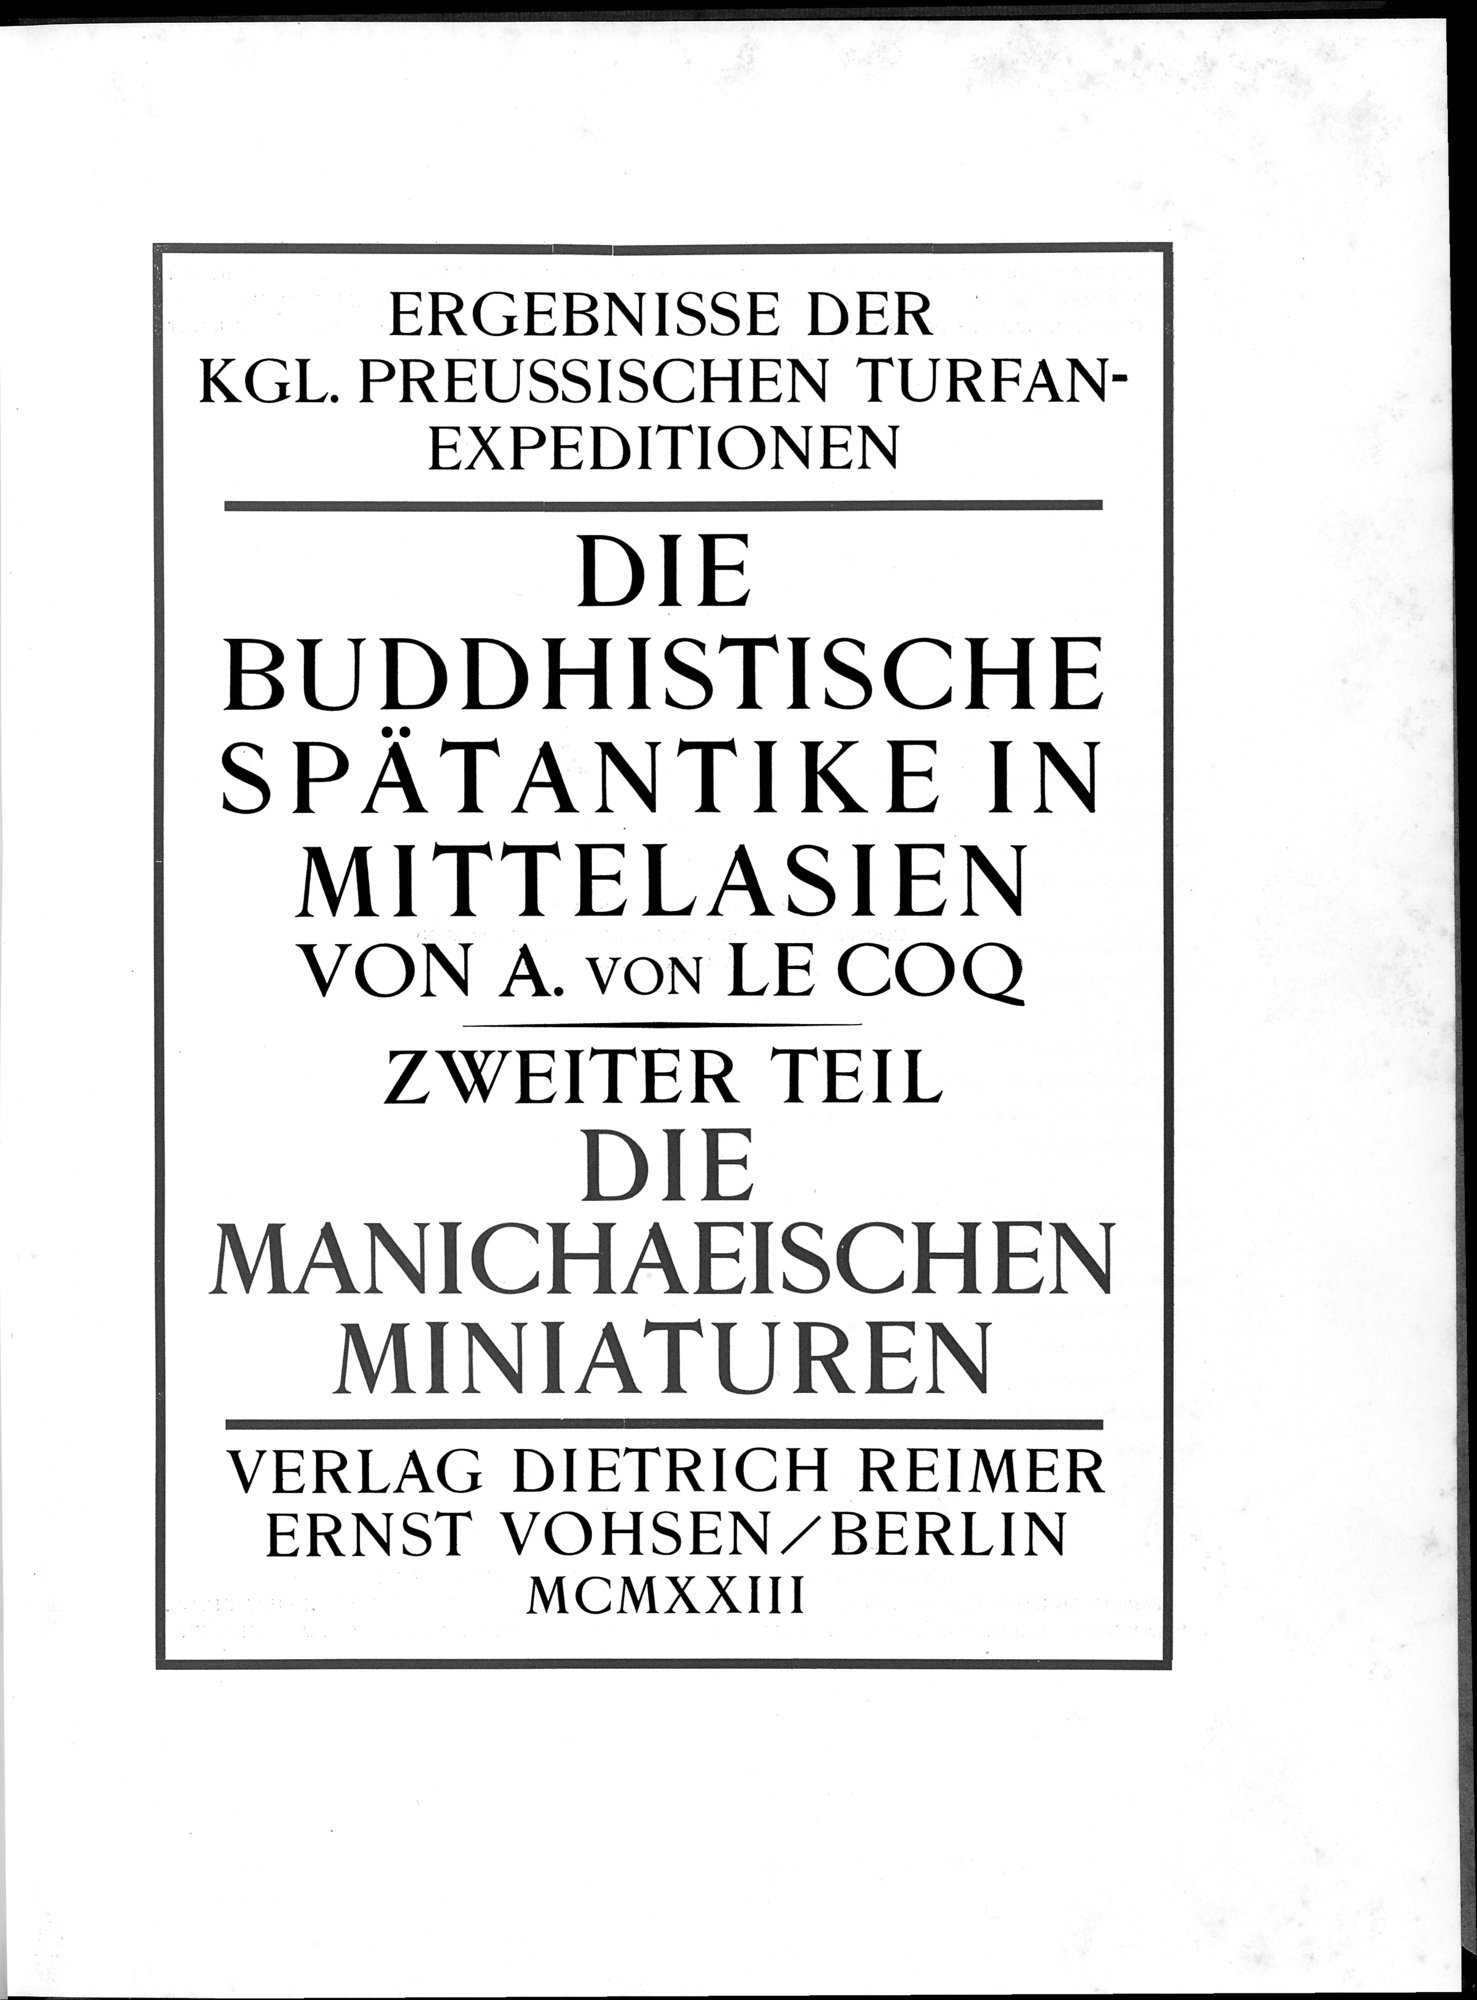 Die Buddhistische Spätantike in Mittelasien : vol.2 / Page 7 (Grayscale High Resolution Image)